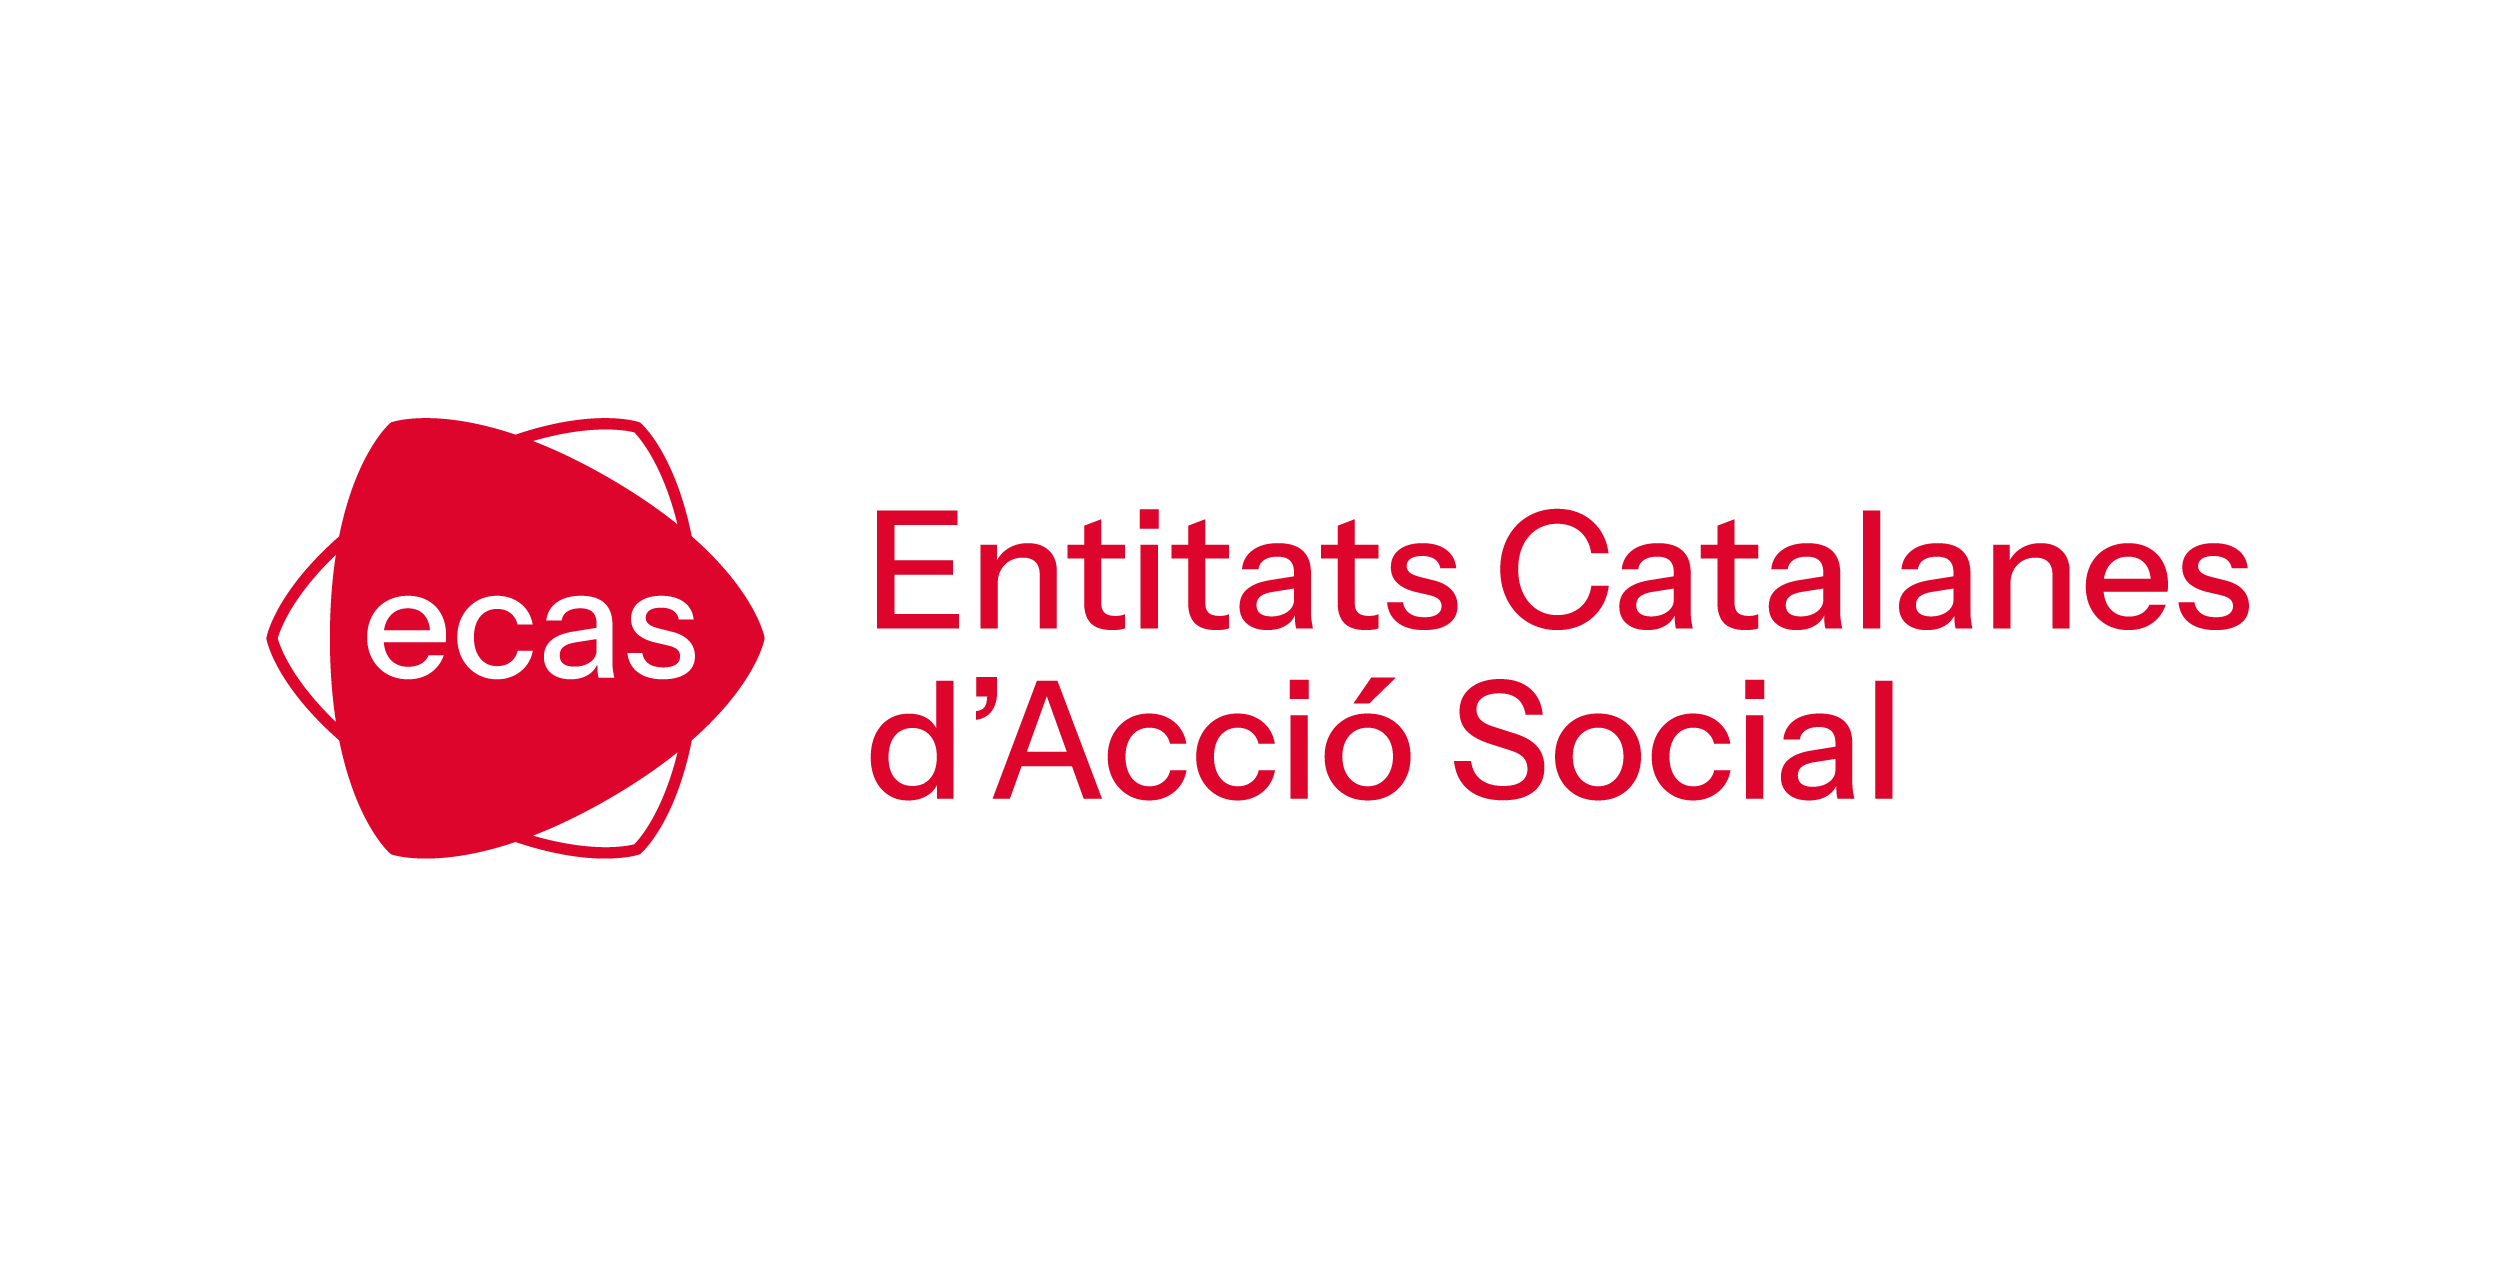 Entitats Catalanes d'Acció Social